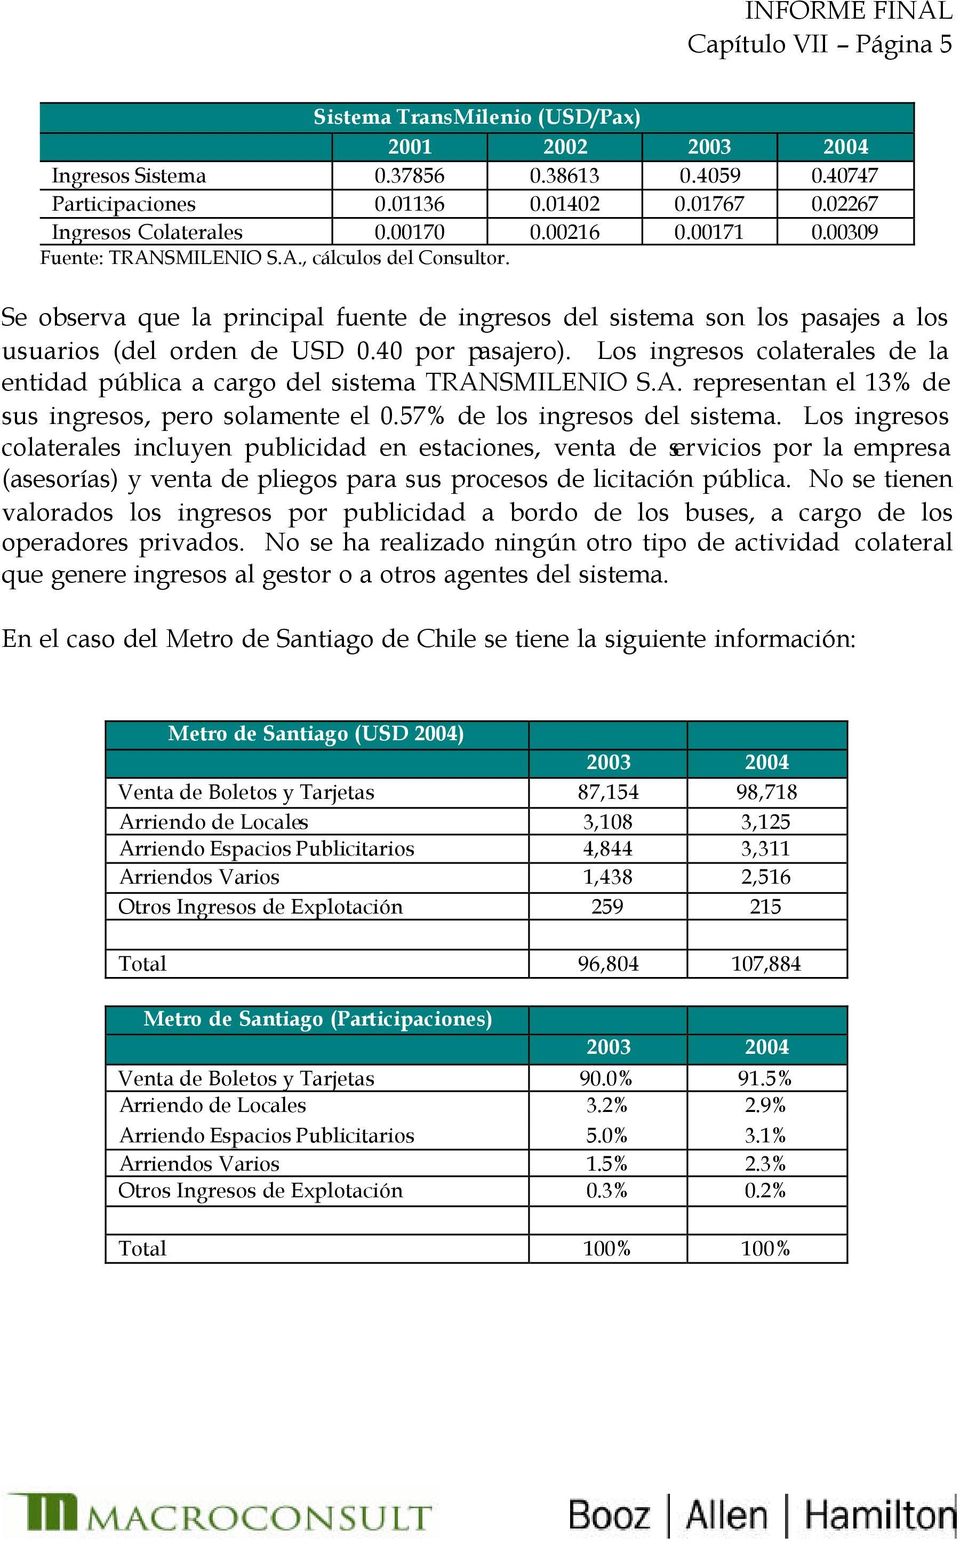 Los ingresos colaterales de la entidad pública a cargo del sistema TRANSMILENIO S.A. representan el 13% de sus ingresos, pero solamente el 0.57% de los ingresos del sistema.